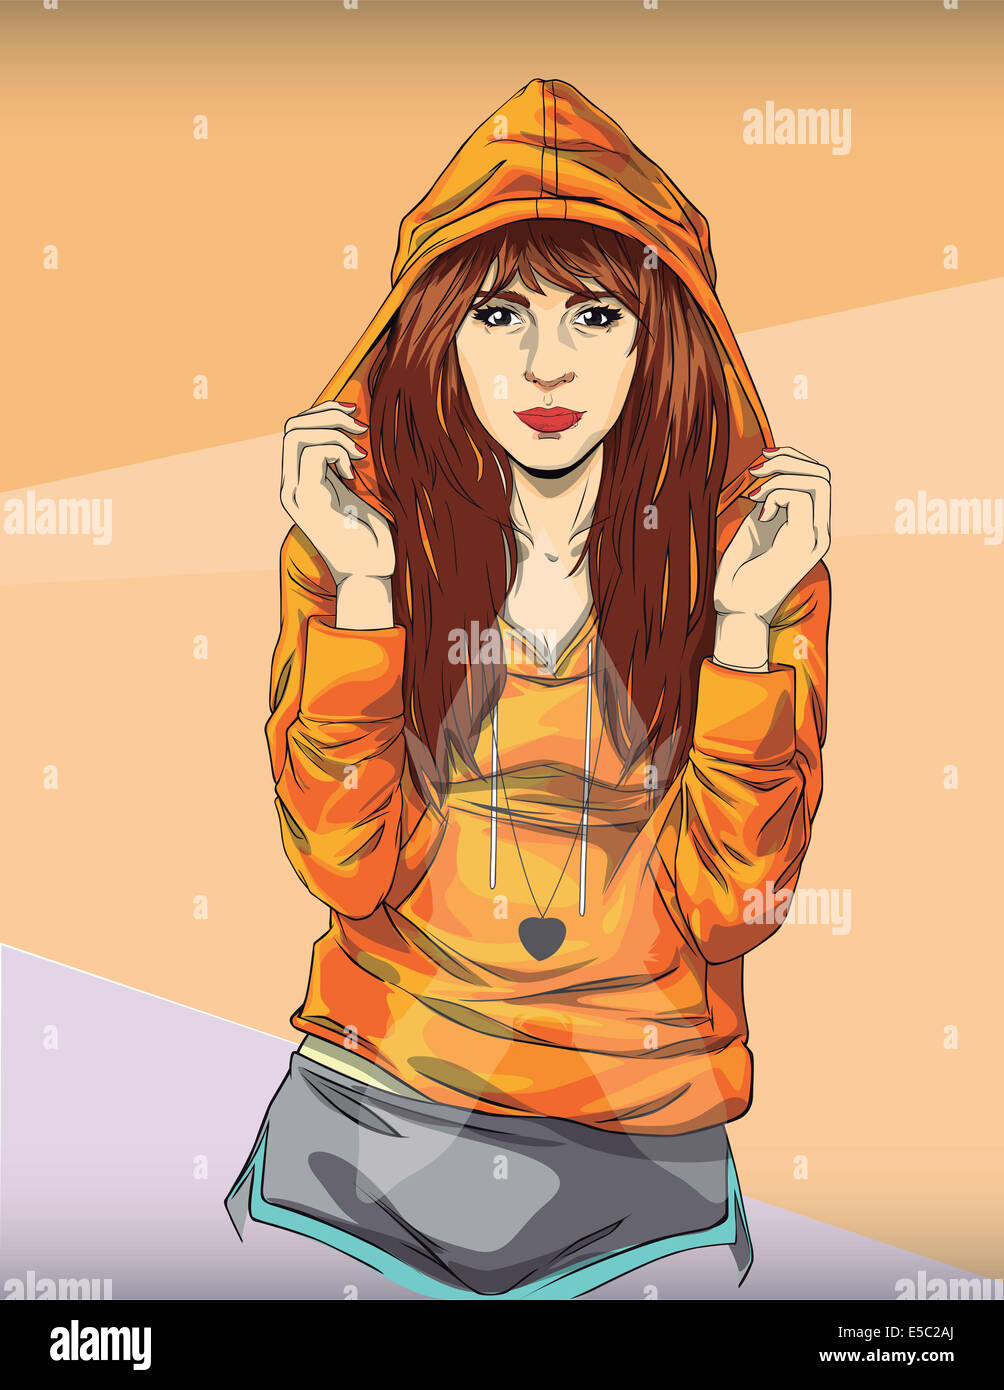 Illustration der angesagte Teenager-Mädchen in orange Kapuzenjacke farbigen Hintergrund Stockfoto